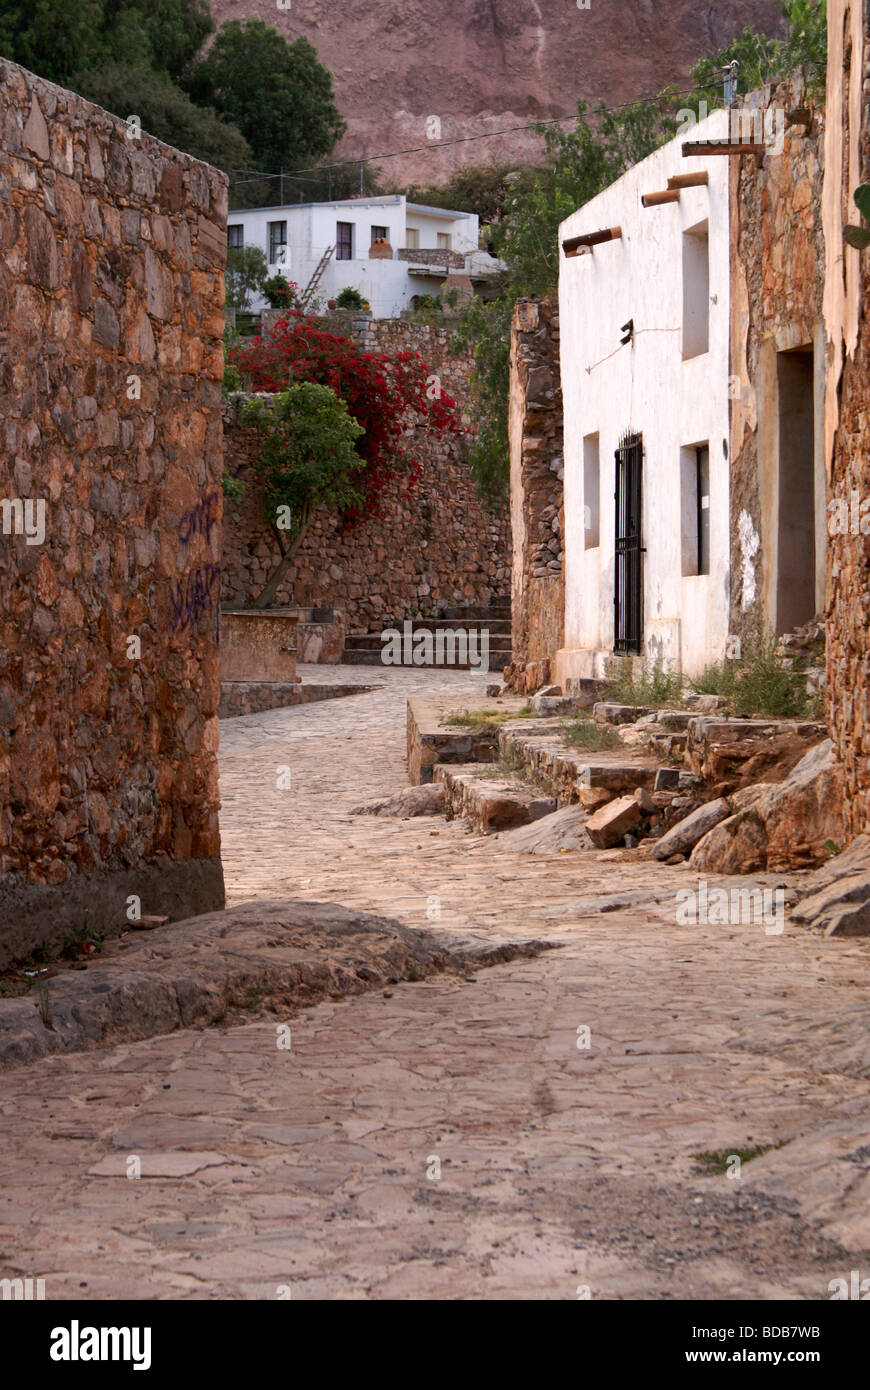 Street in the mining ghost town of Cerro de San Pedro, San Luis Potosi state, Mexico Stock Photo